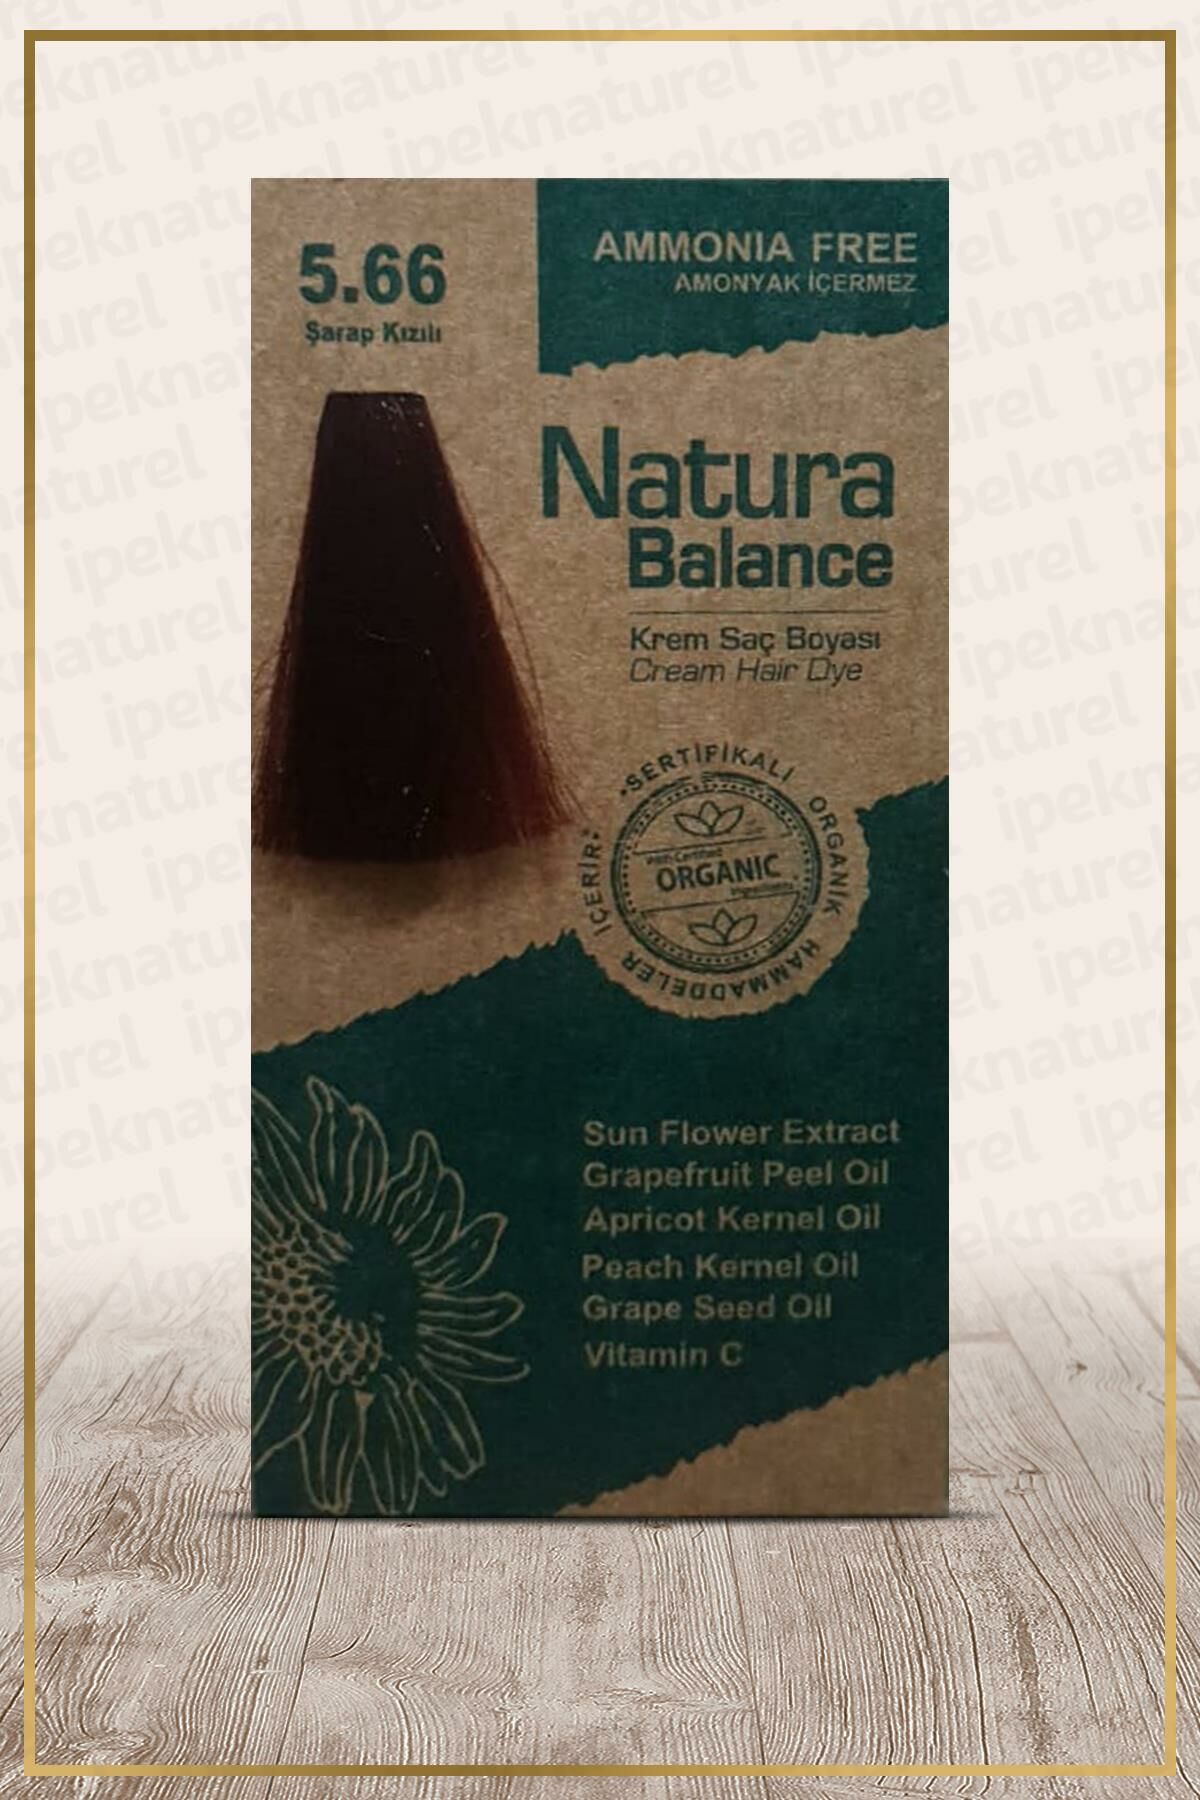 Natura Balance (Krem Saç Boyası) Şarap Kızılı 5.66